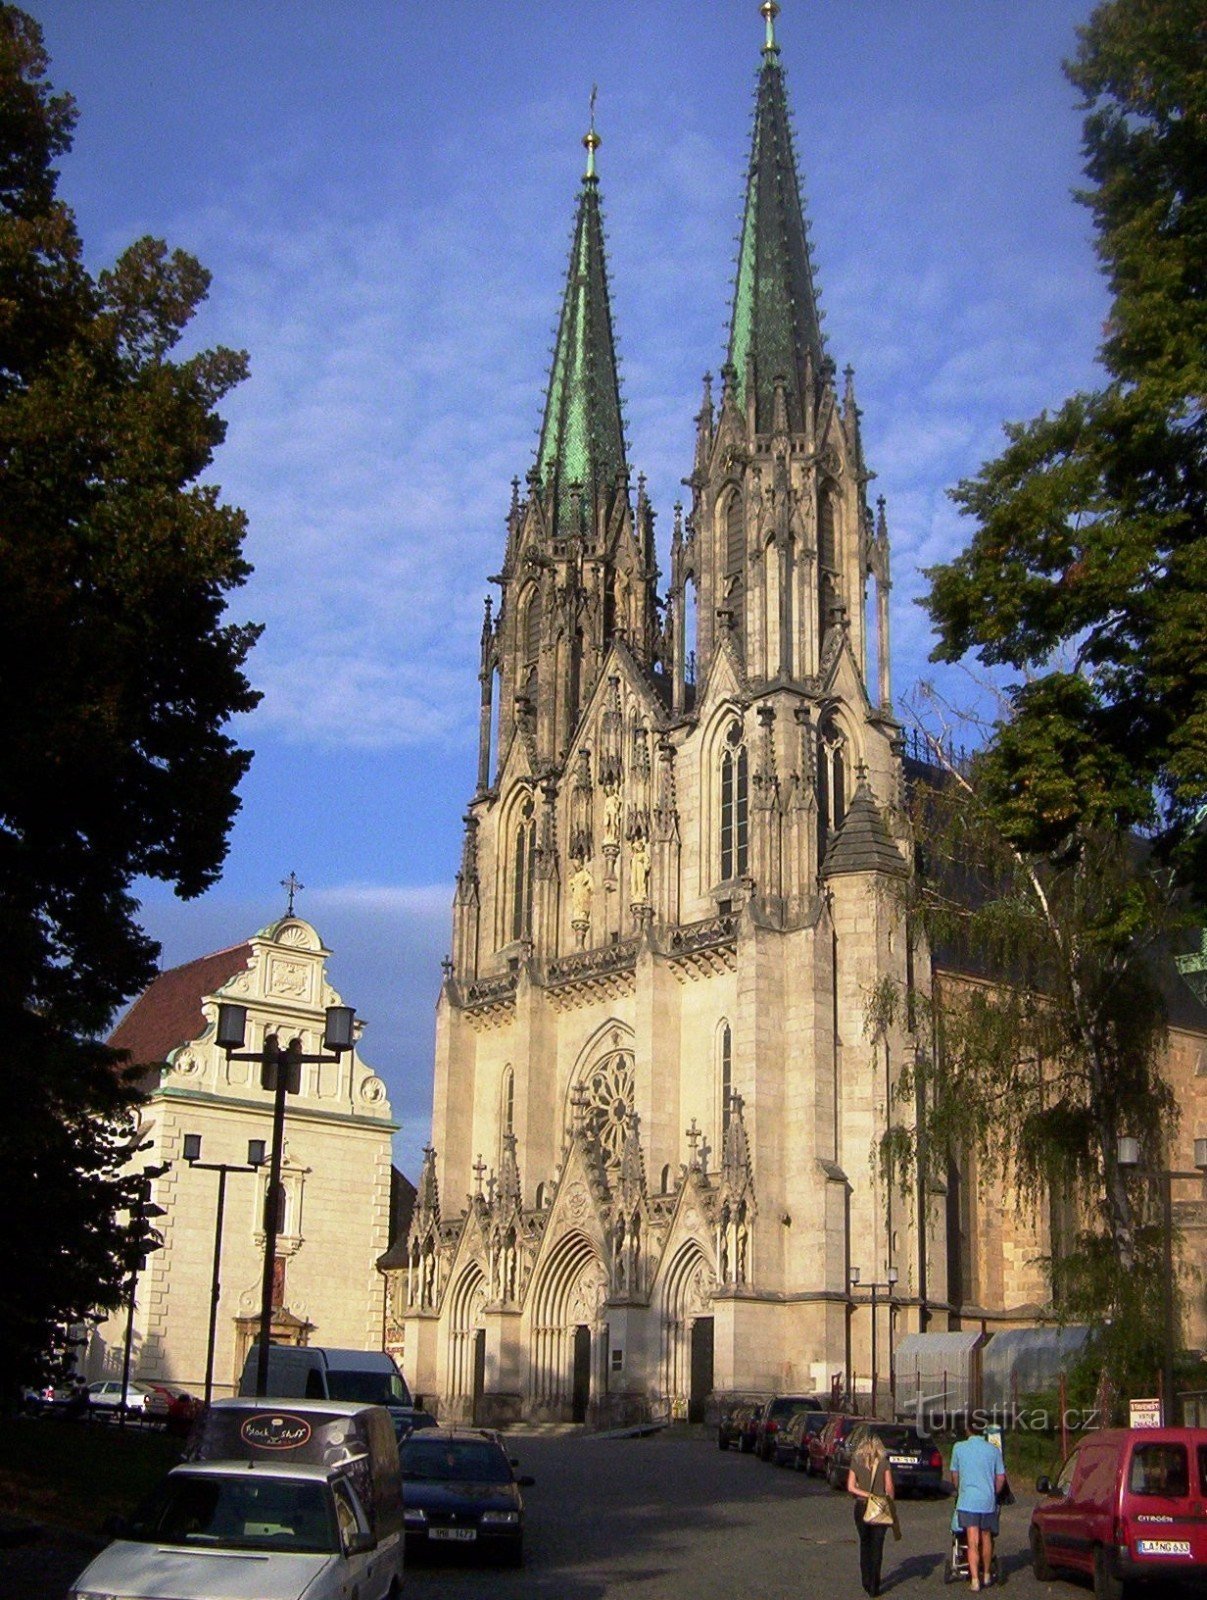 Olomouc - Praça Venceslau - Catedral de São Venceslau - Foto: Ulrych Mir.